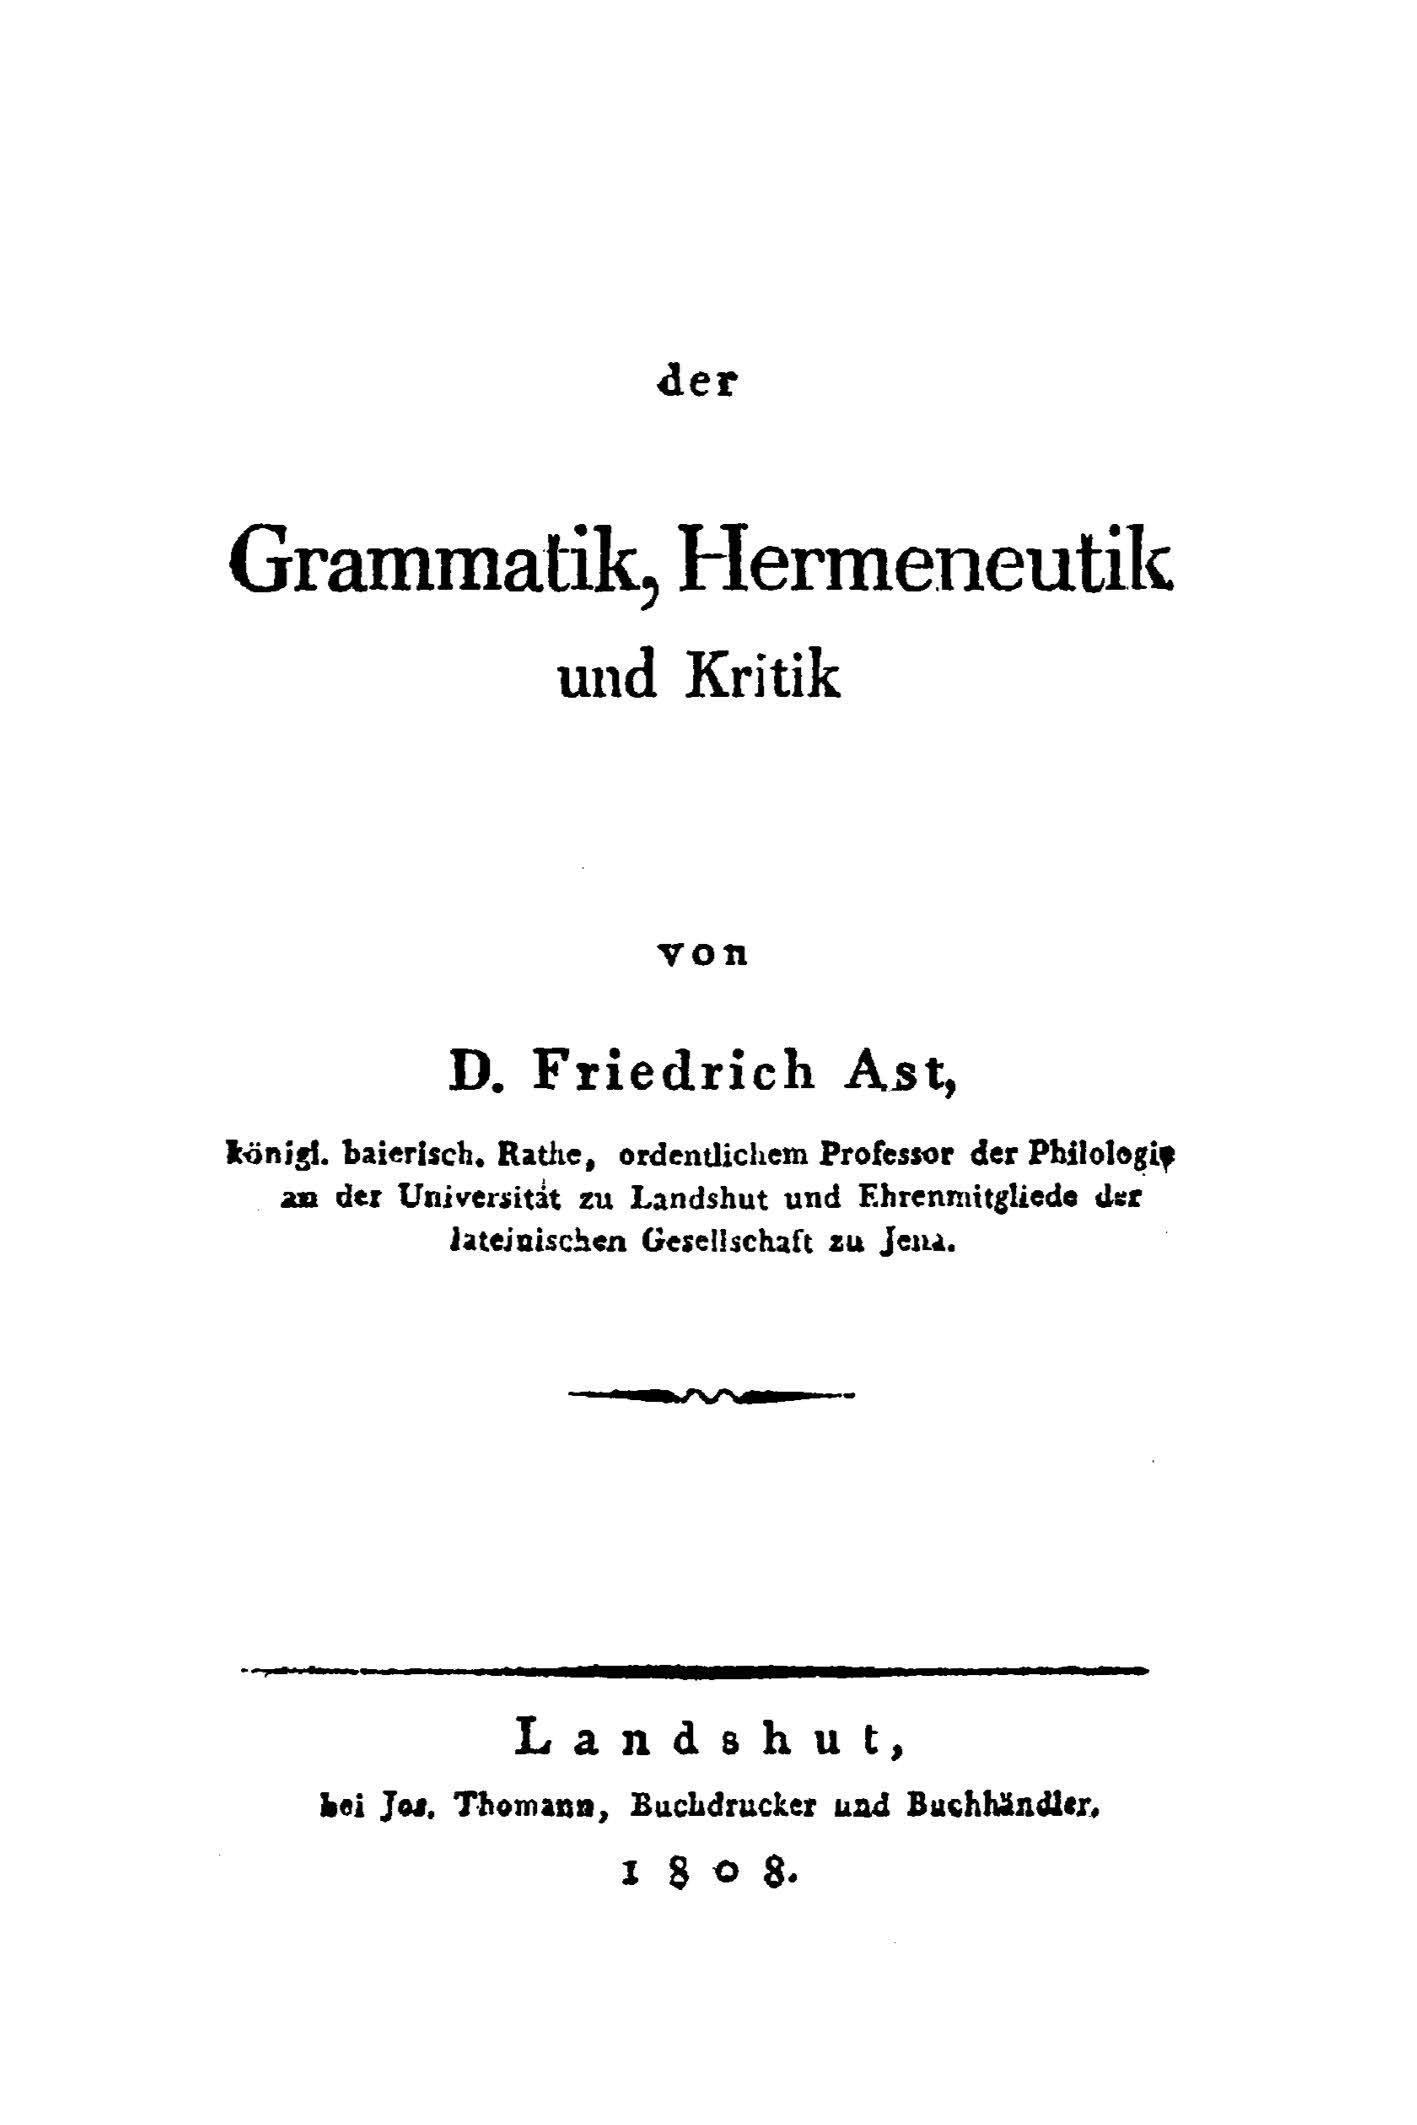 Der Grammatik, Hermeneutik und Kritic